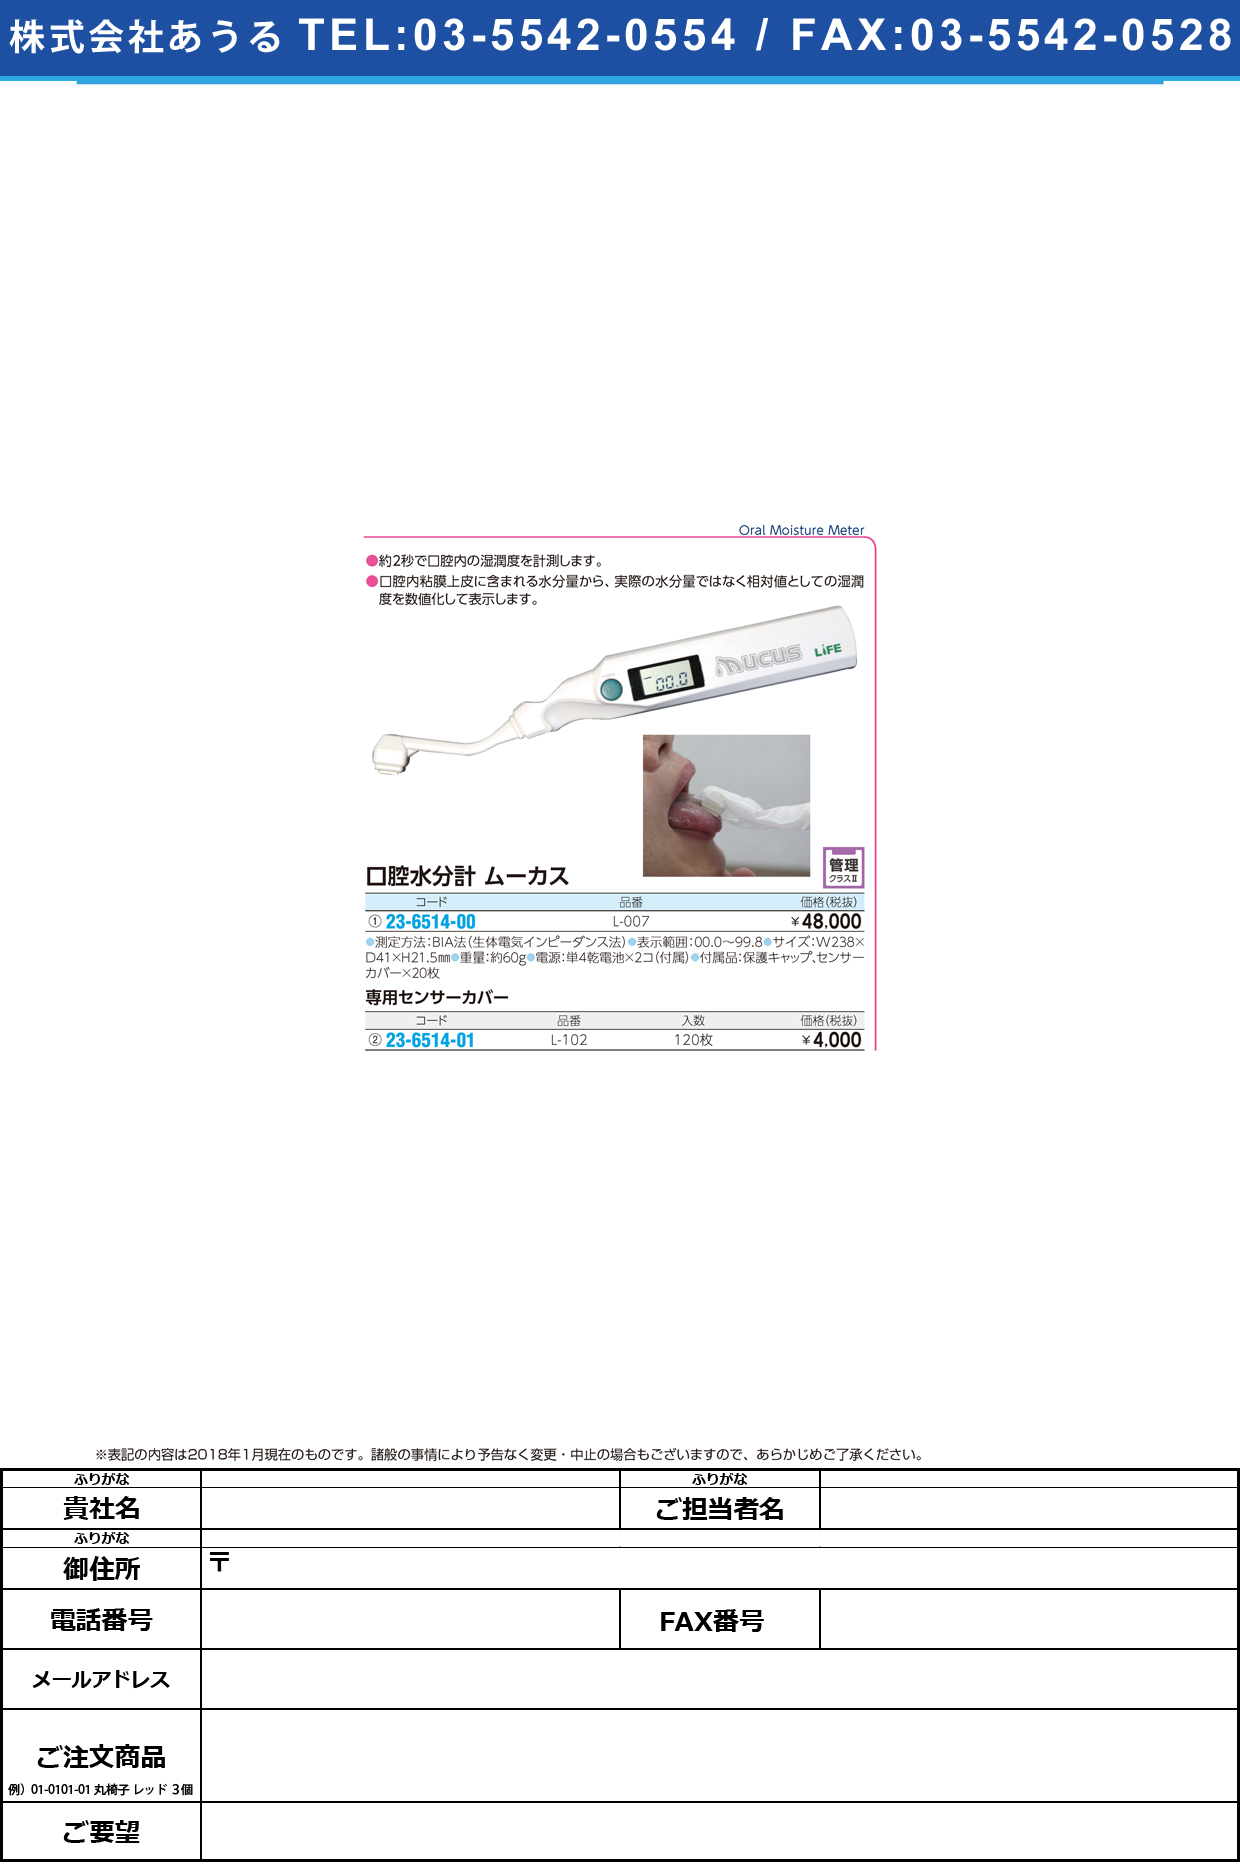 (23-6514-01)ムーカス専用センサーカバー L-102(120ﾏｲｲﾘ) ﾑｰｶｽｾﾝﾖｳｾﾝｻｰｶﾊﾞｰ【1箱単位】【2018年カタログ商品】